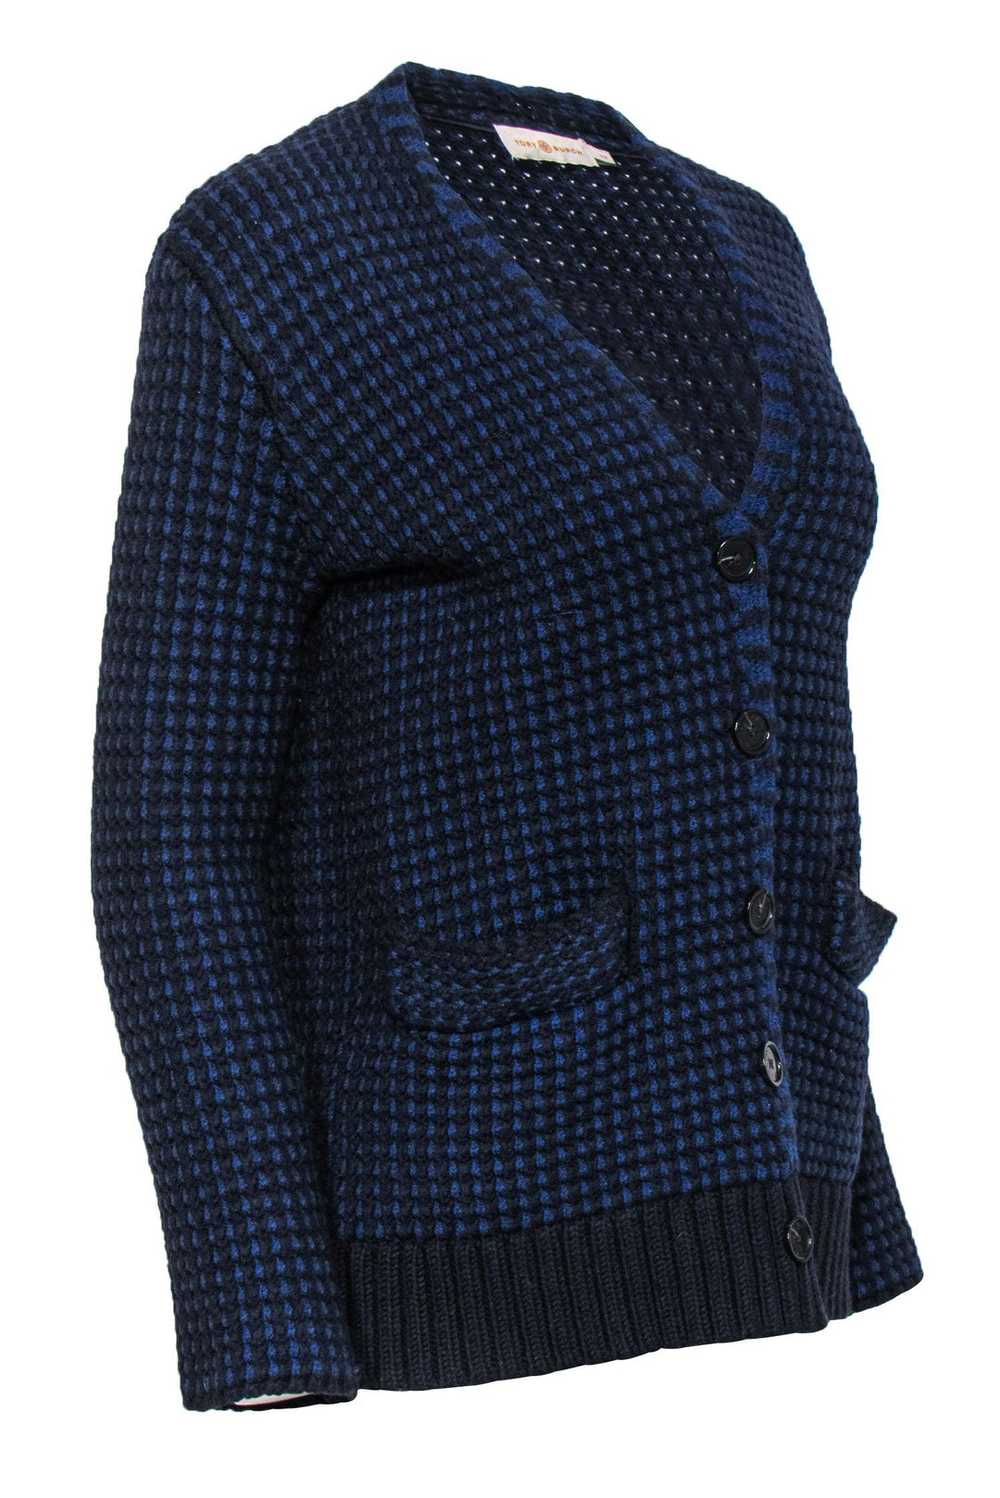 Tory Burch - Blue & Black Waffle Knit Merino Wool… - image 2